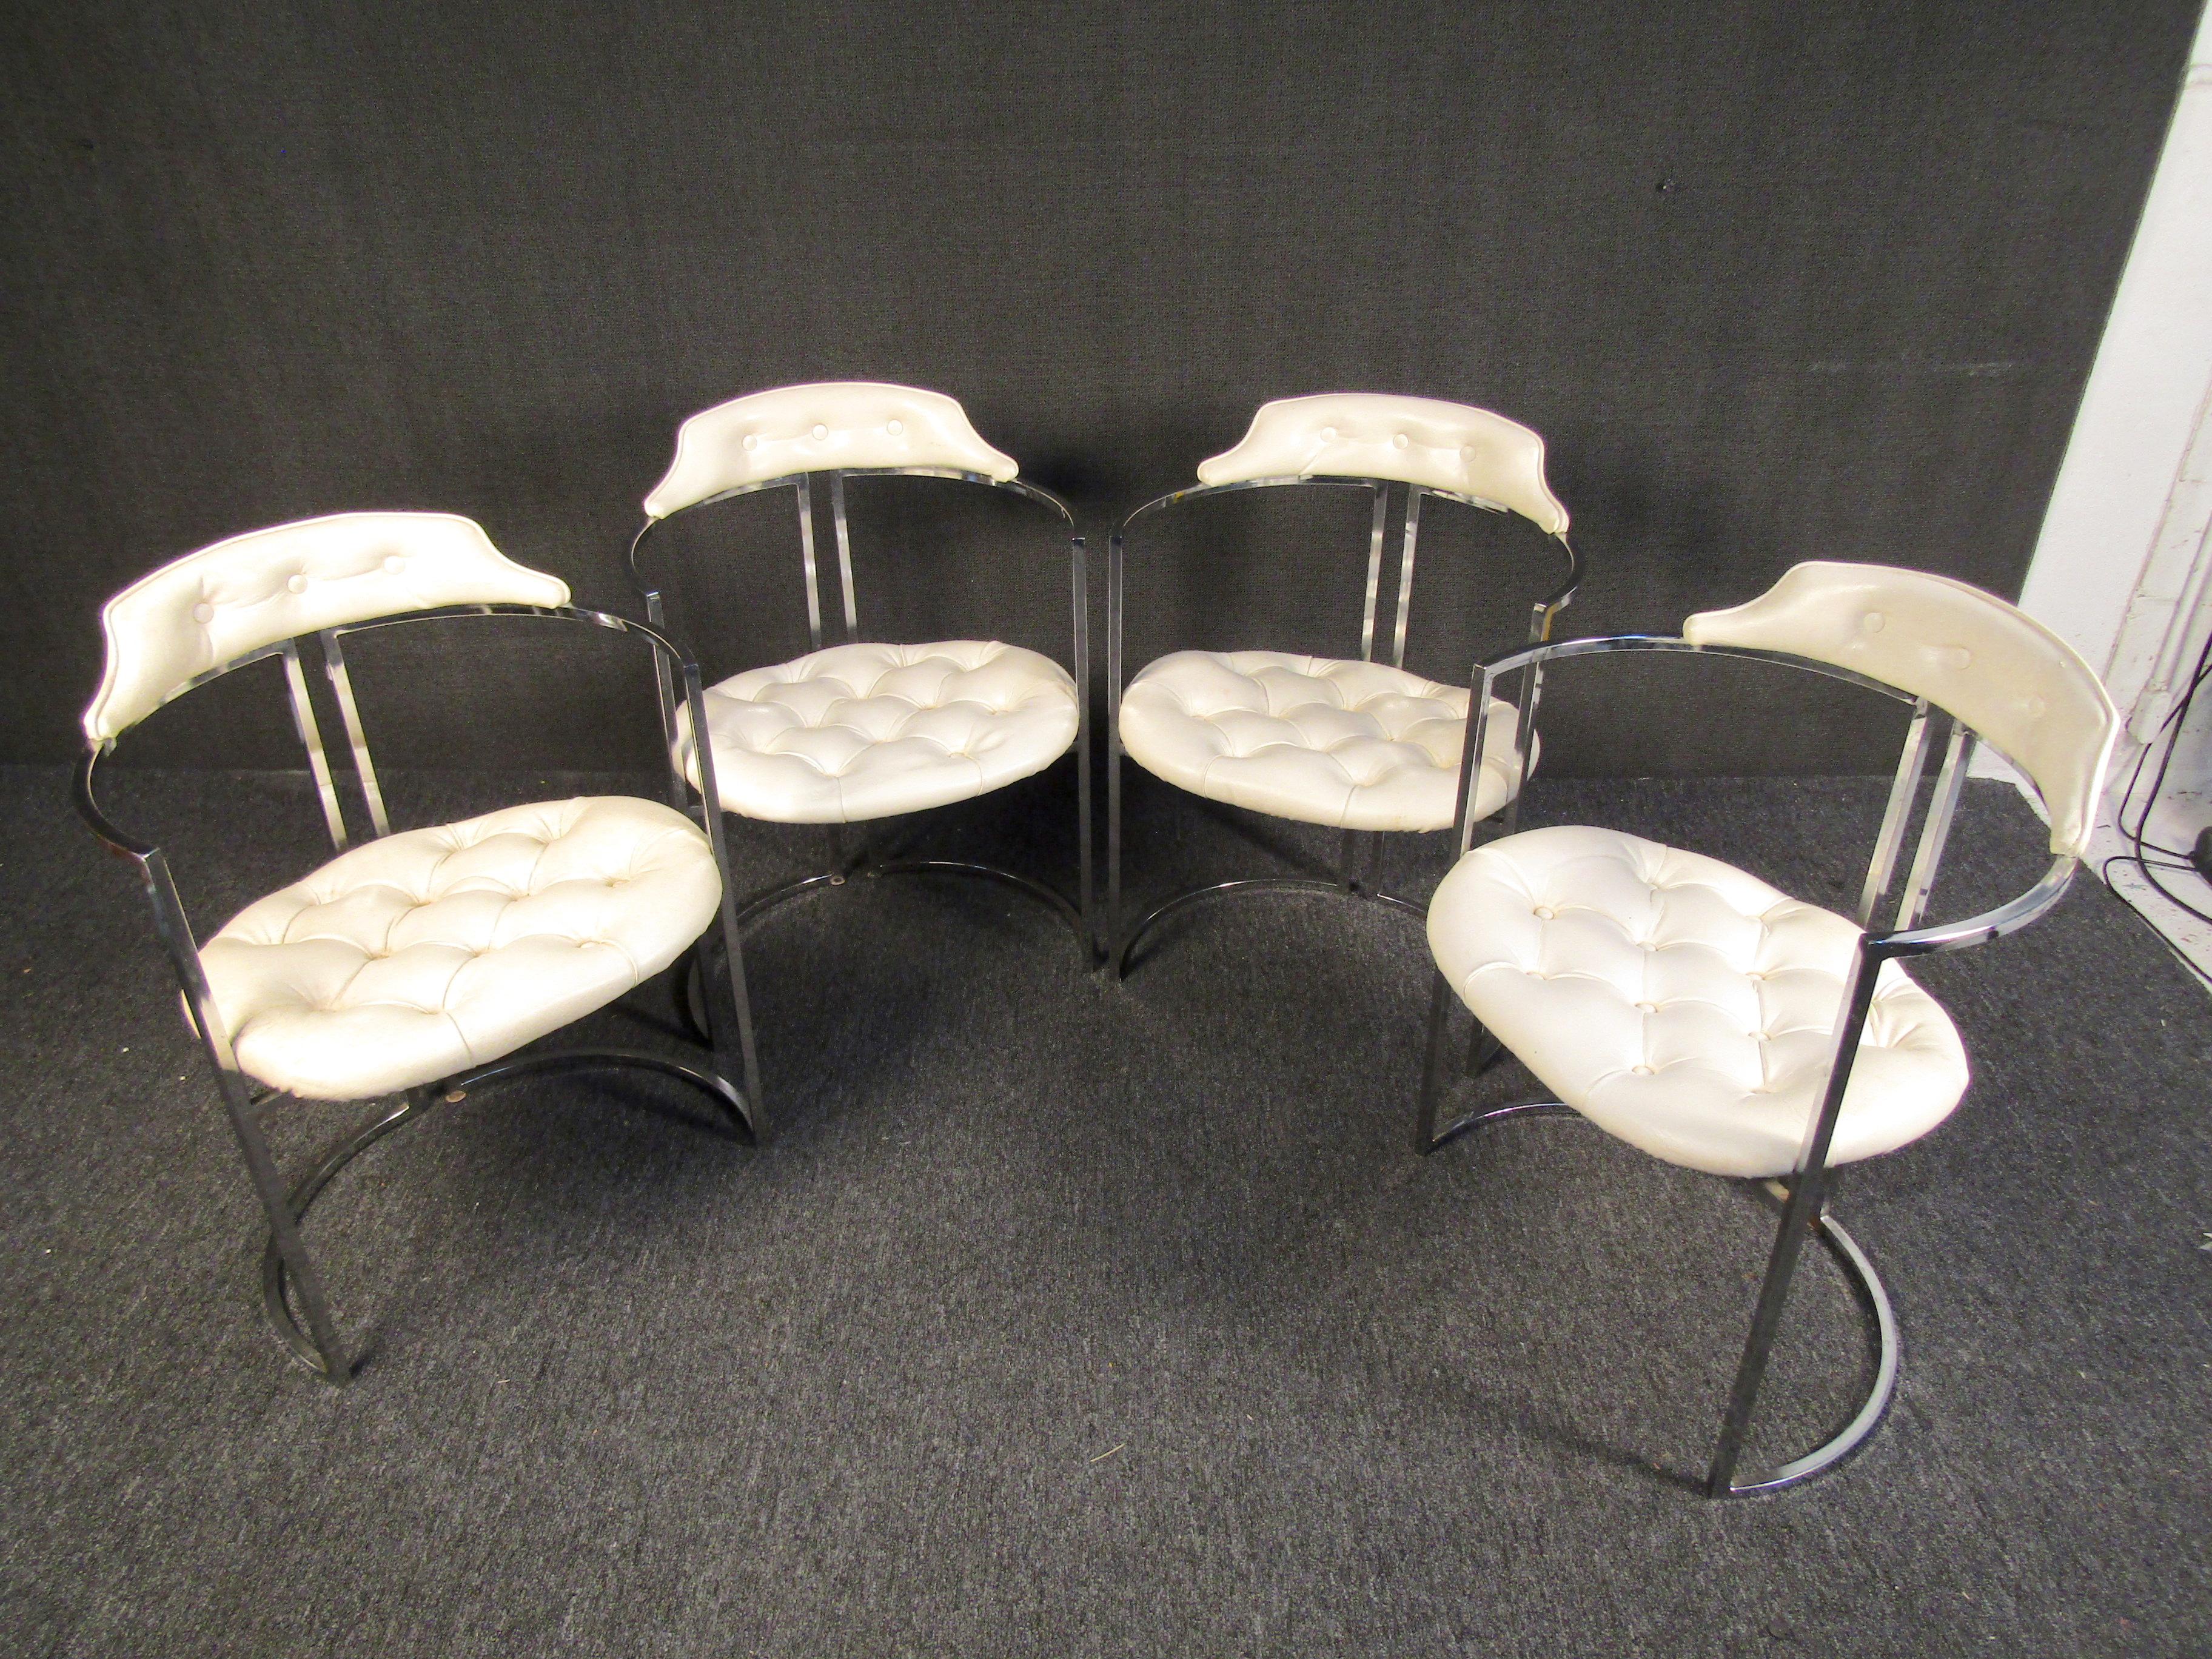 Un ensemble impressionnant de quatre chaises modernes du milieu du siècle dernier, inspirées des dessins de Milo Baughman. Les dossiers incurvés et la base circulaire donnent à ces chaises une forme géométrique intéressante qui est complétée par des